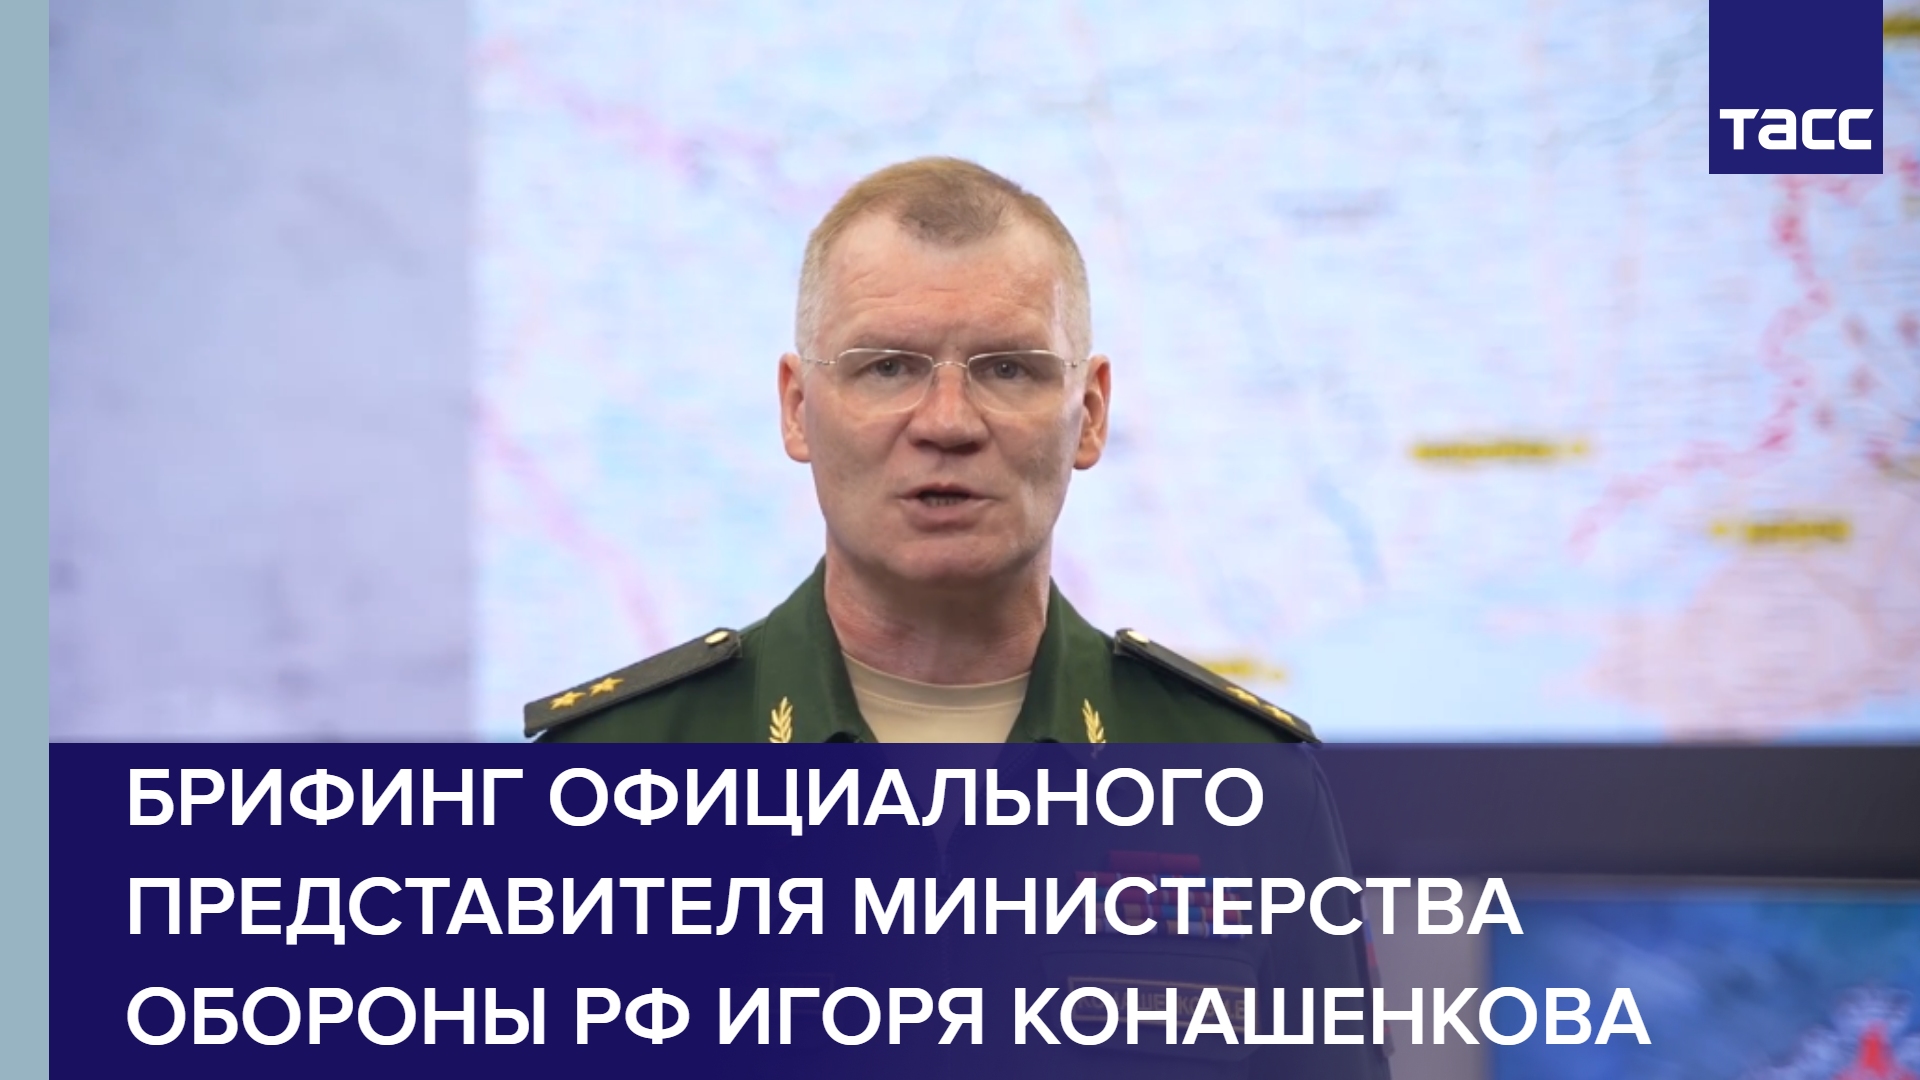 Брифинг официального представителя Министерства обороны РФ Игоря Конашенкова.